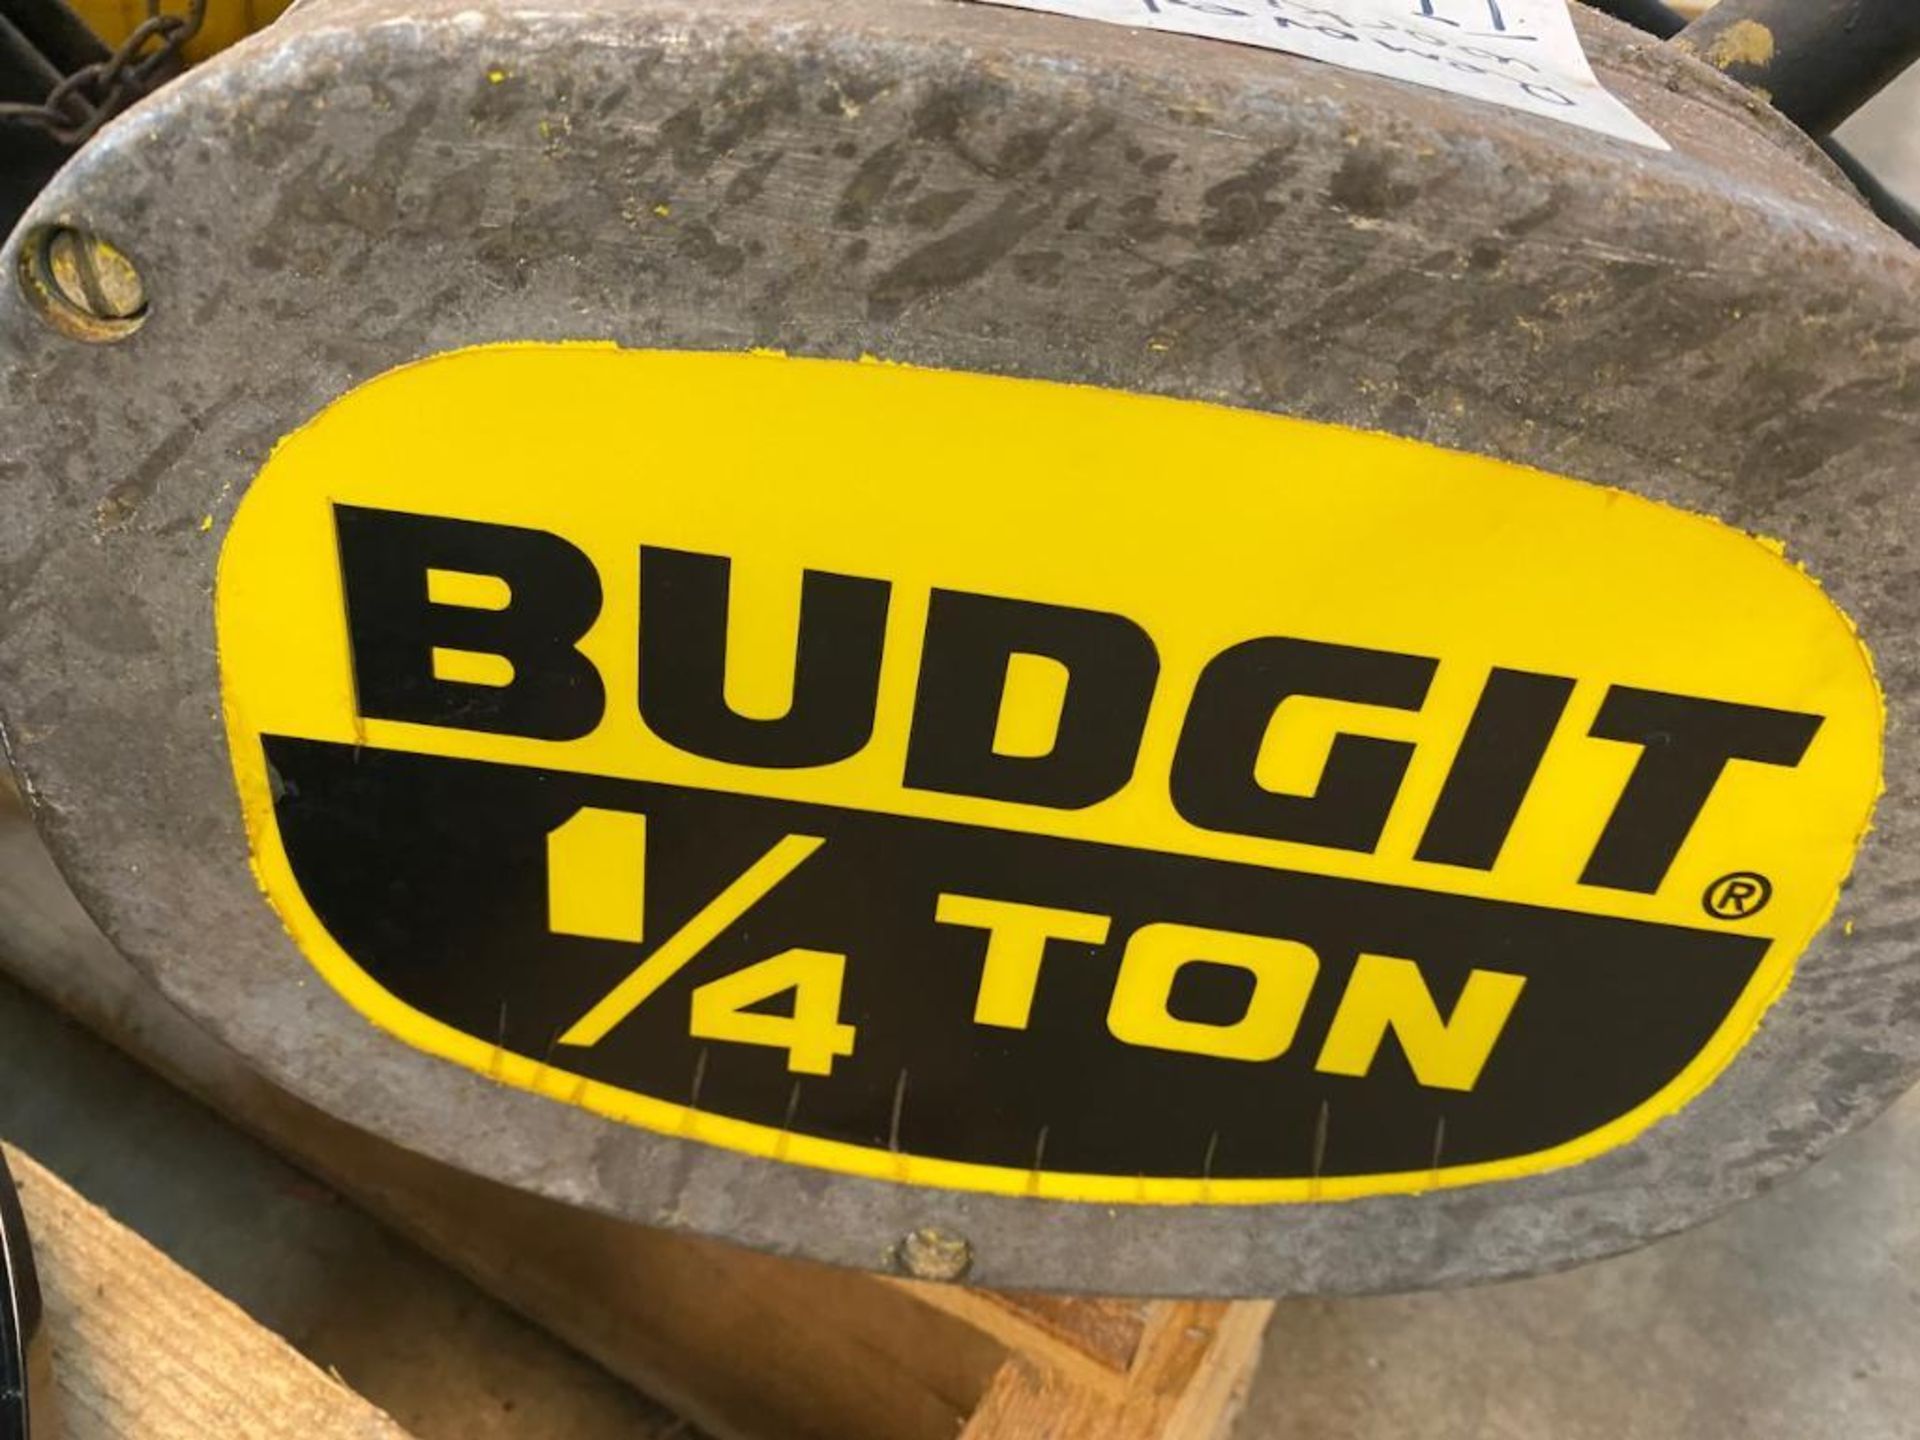 Budgit 1/4 ton hoist - Image 3 of 5